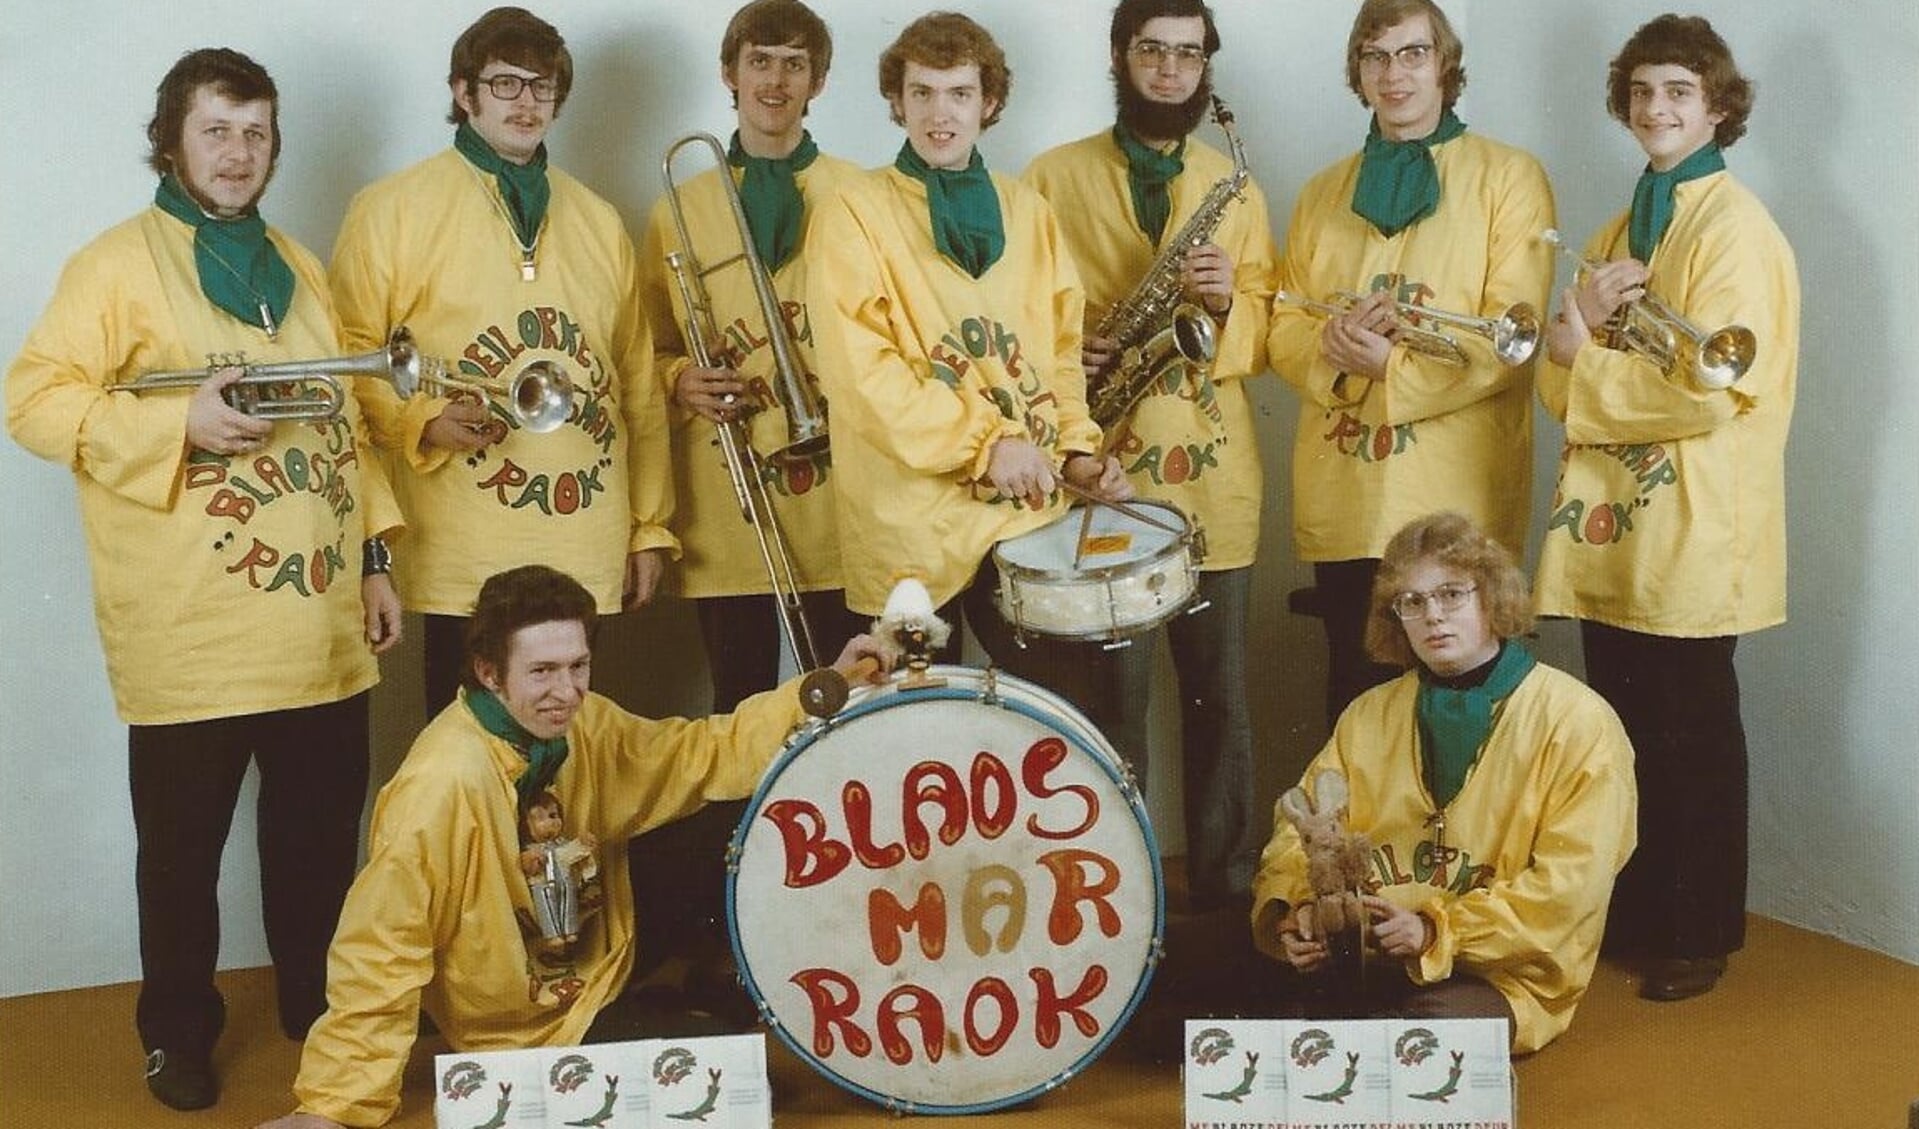 Blaos Mar Raok, 1973